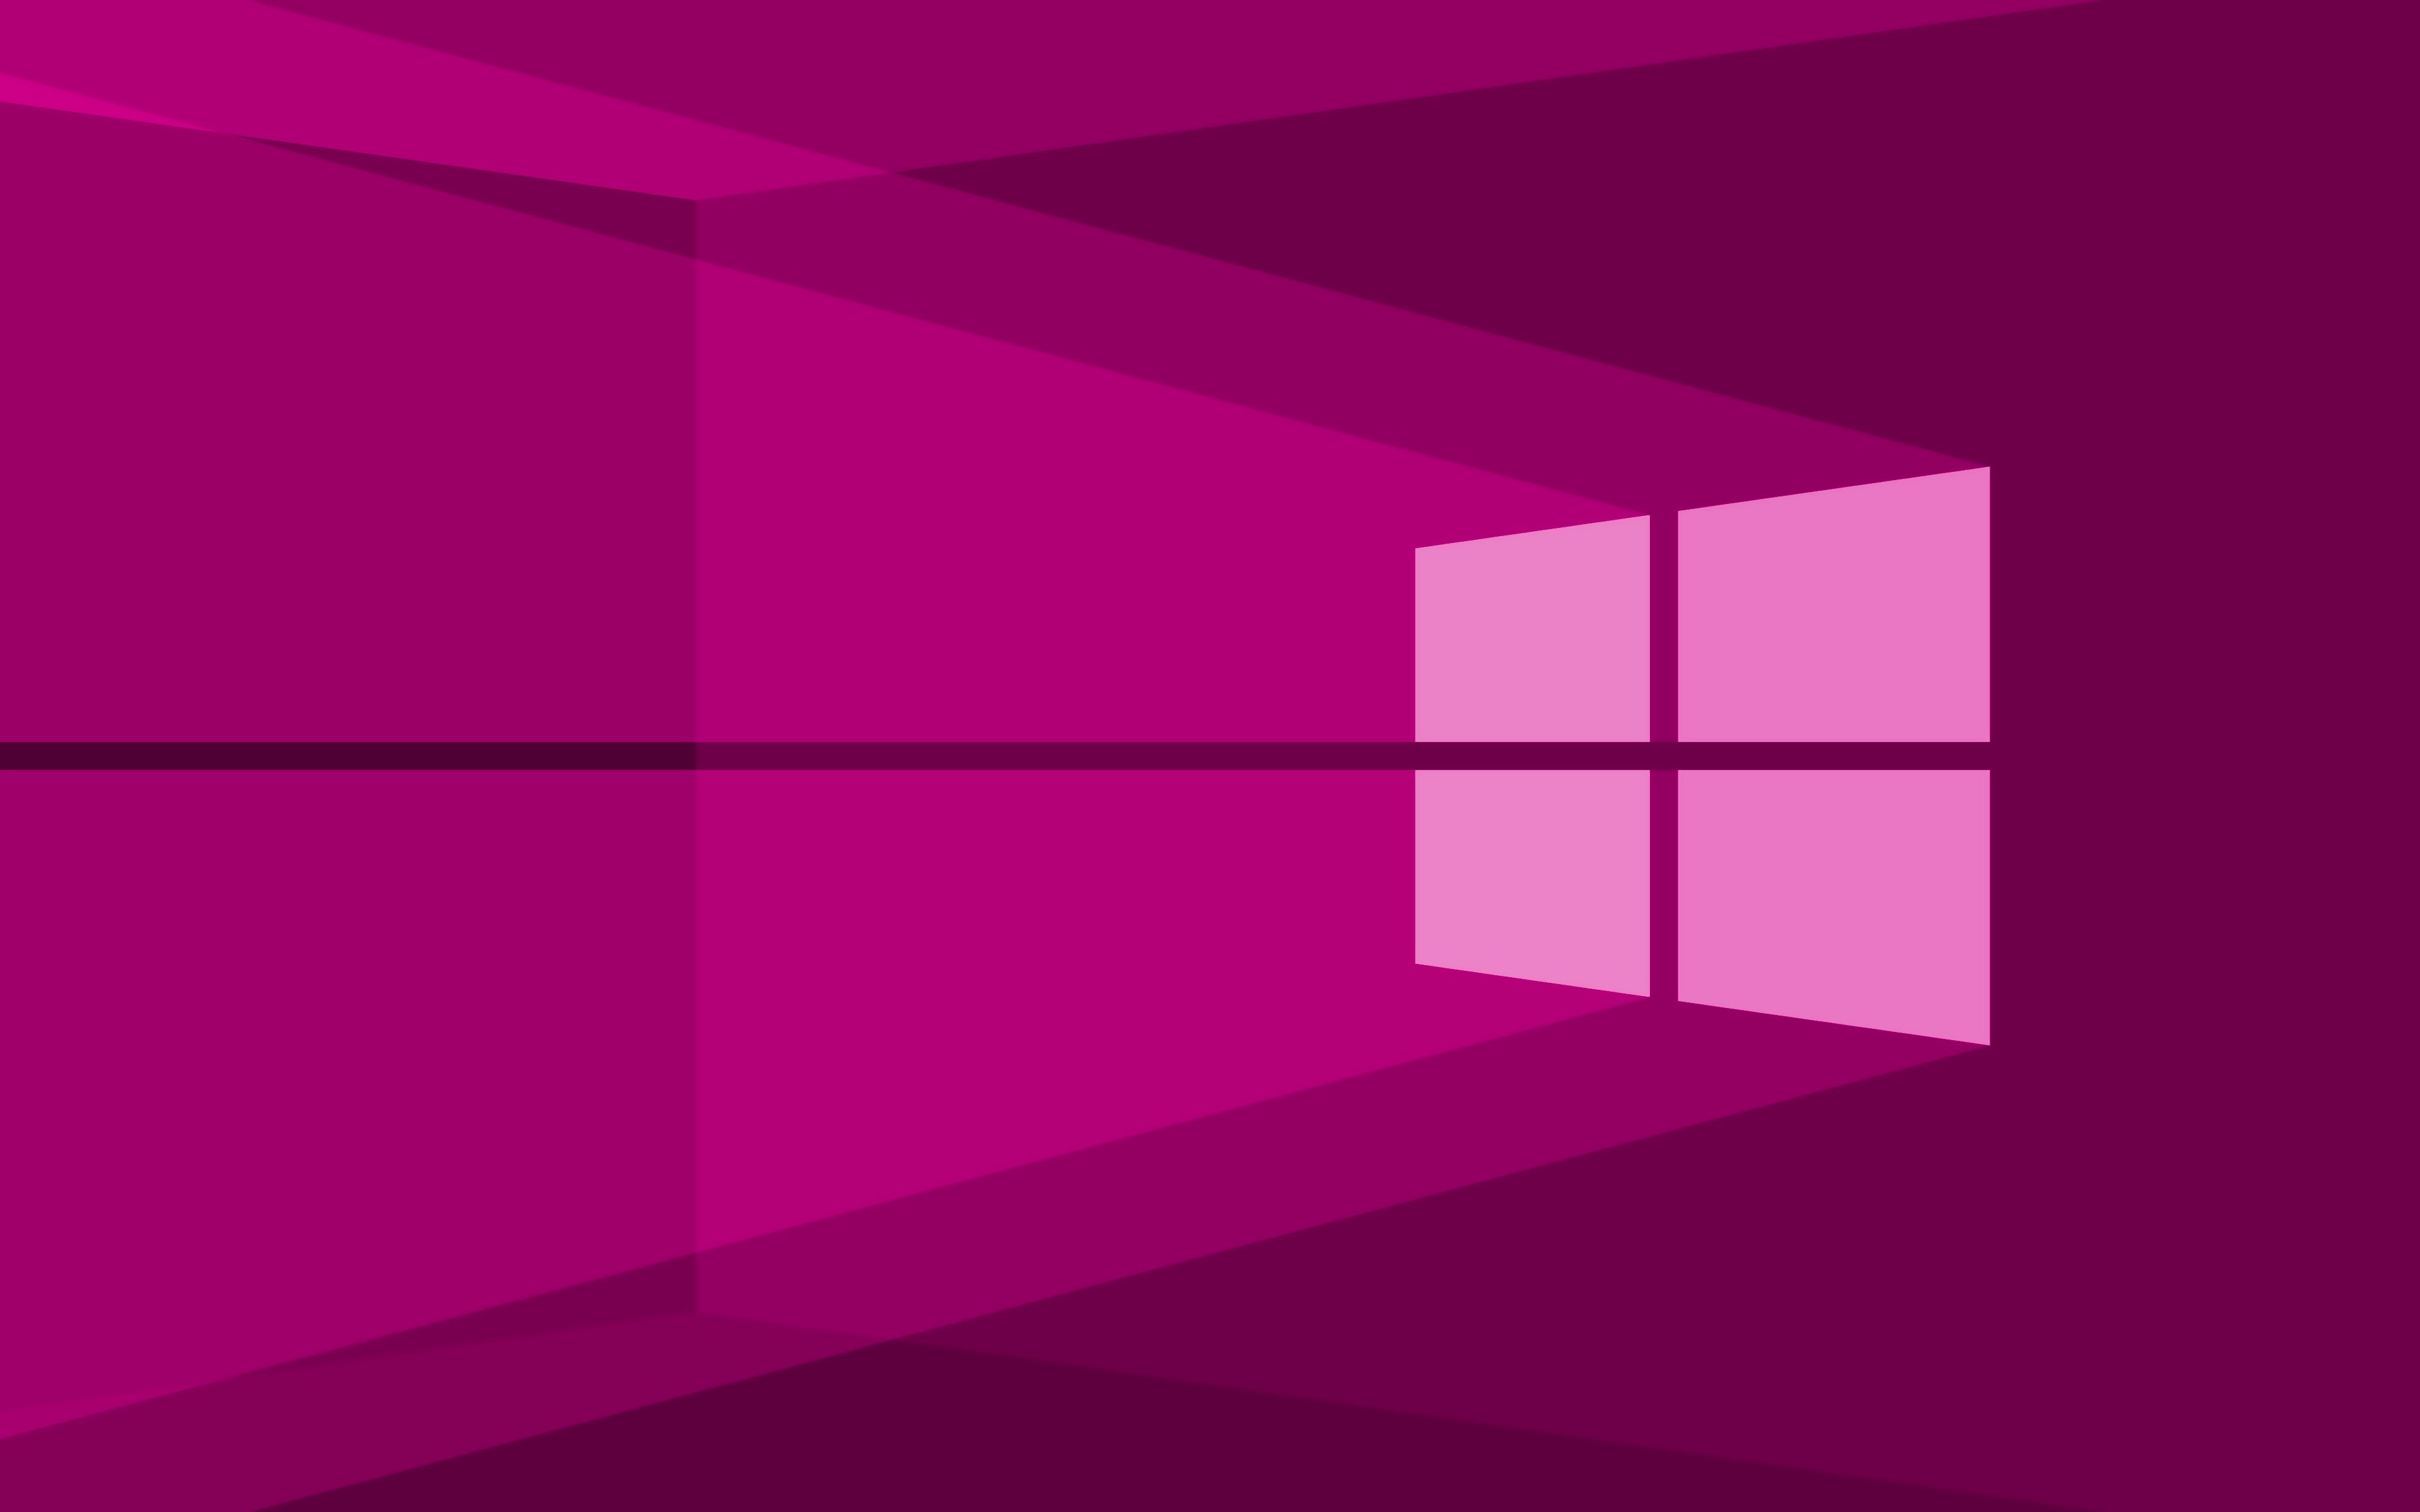 Обои на 10 4. Фиолетовый виндовс 10. Розовый Windows. Виндовс 10. Рабочий стол Windows 10.